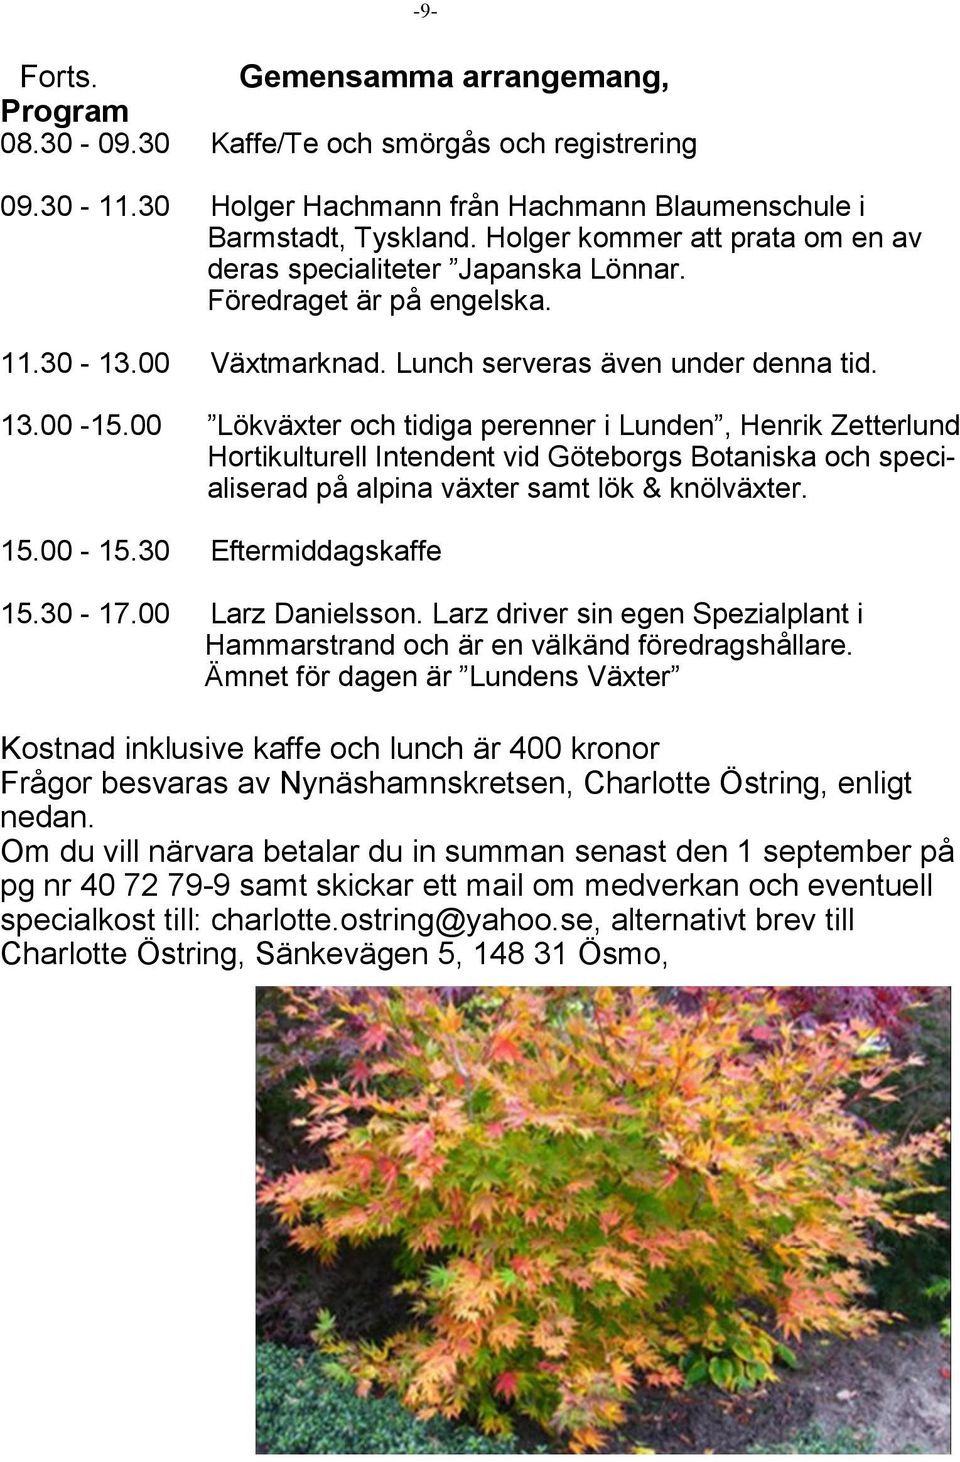 00 Lökväxter och tidiga perenner i Lunden, Henrik Zetterlund Hortikulturell Intendent vid Göteborgs Botaniska och specialiserad på alpina växter samt lök & knölväxter. 15.00-15.